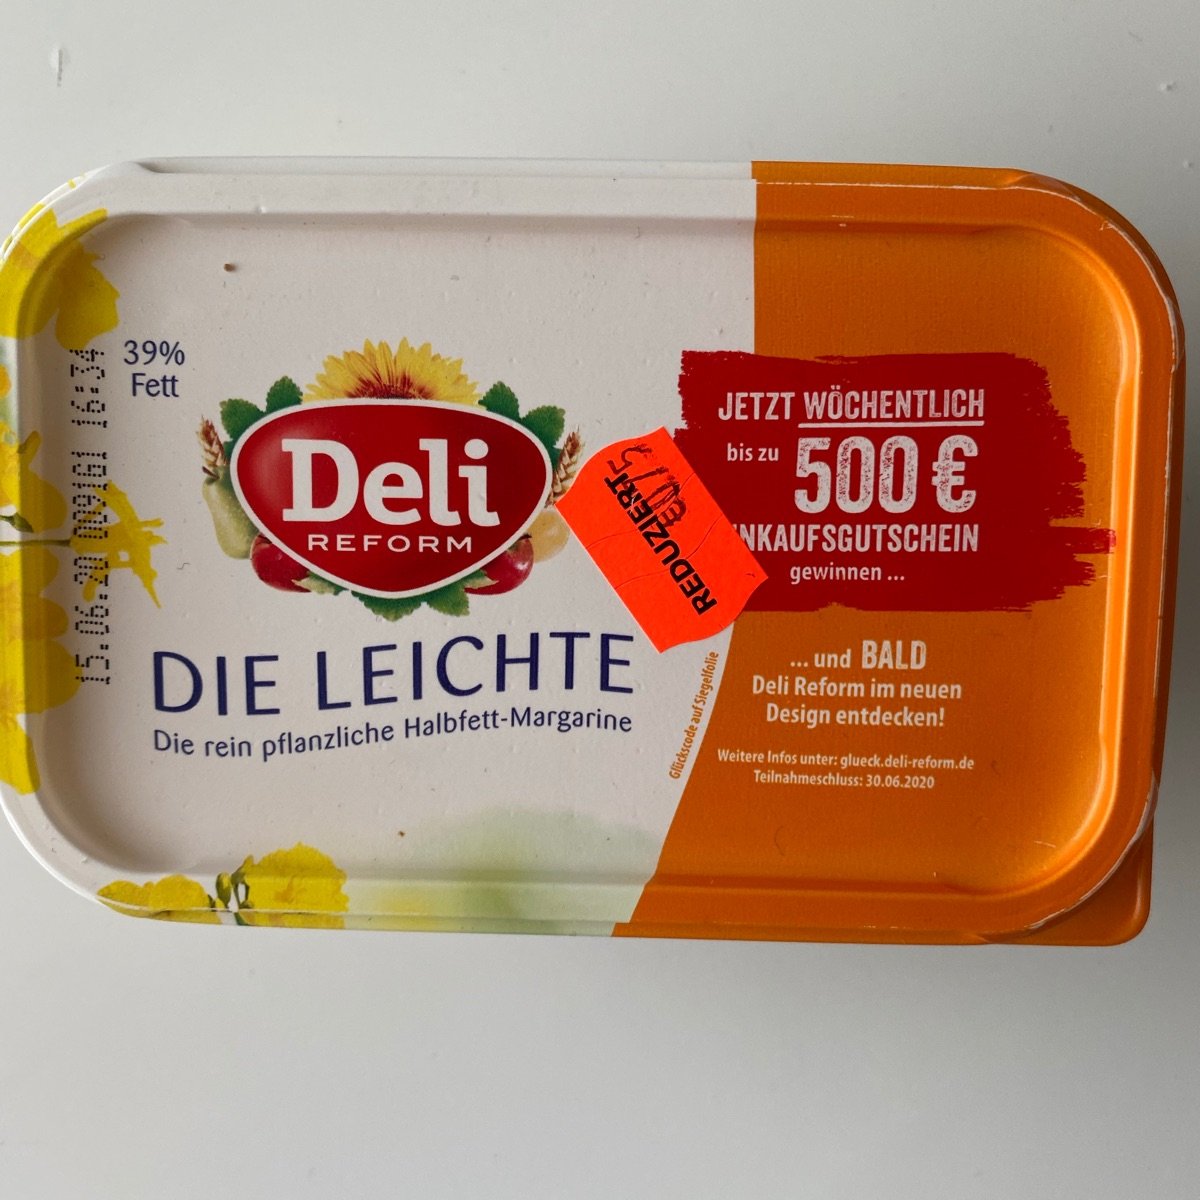 Deli REFORM Margarine Die Leichte Reviews | abillion